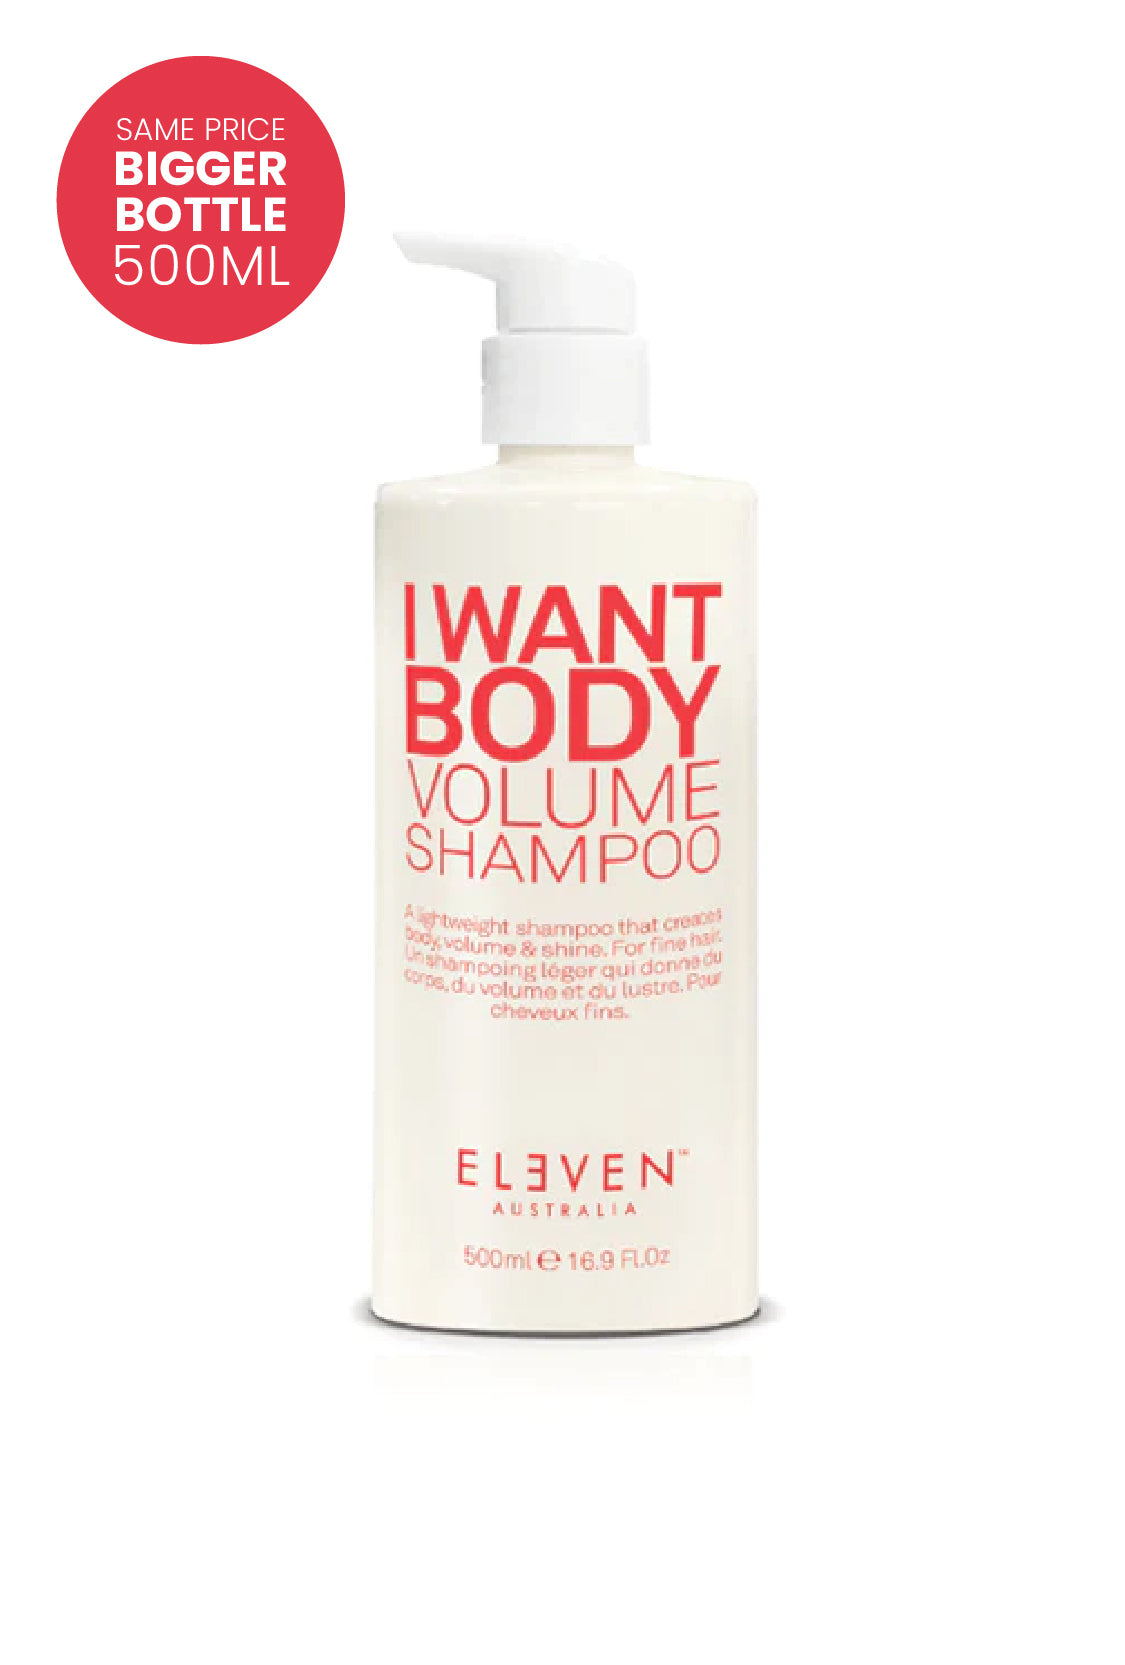 I Want Body Volume Shampoo - 500ml - ELEVEN Australia